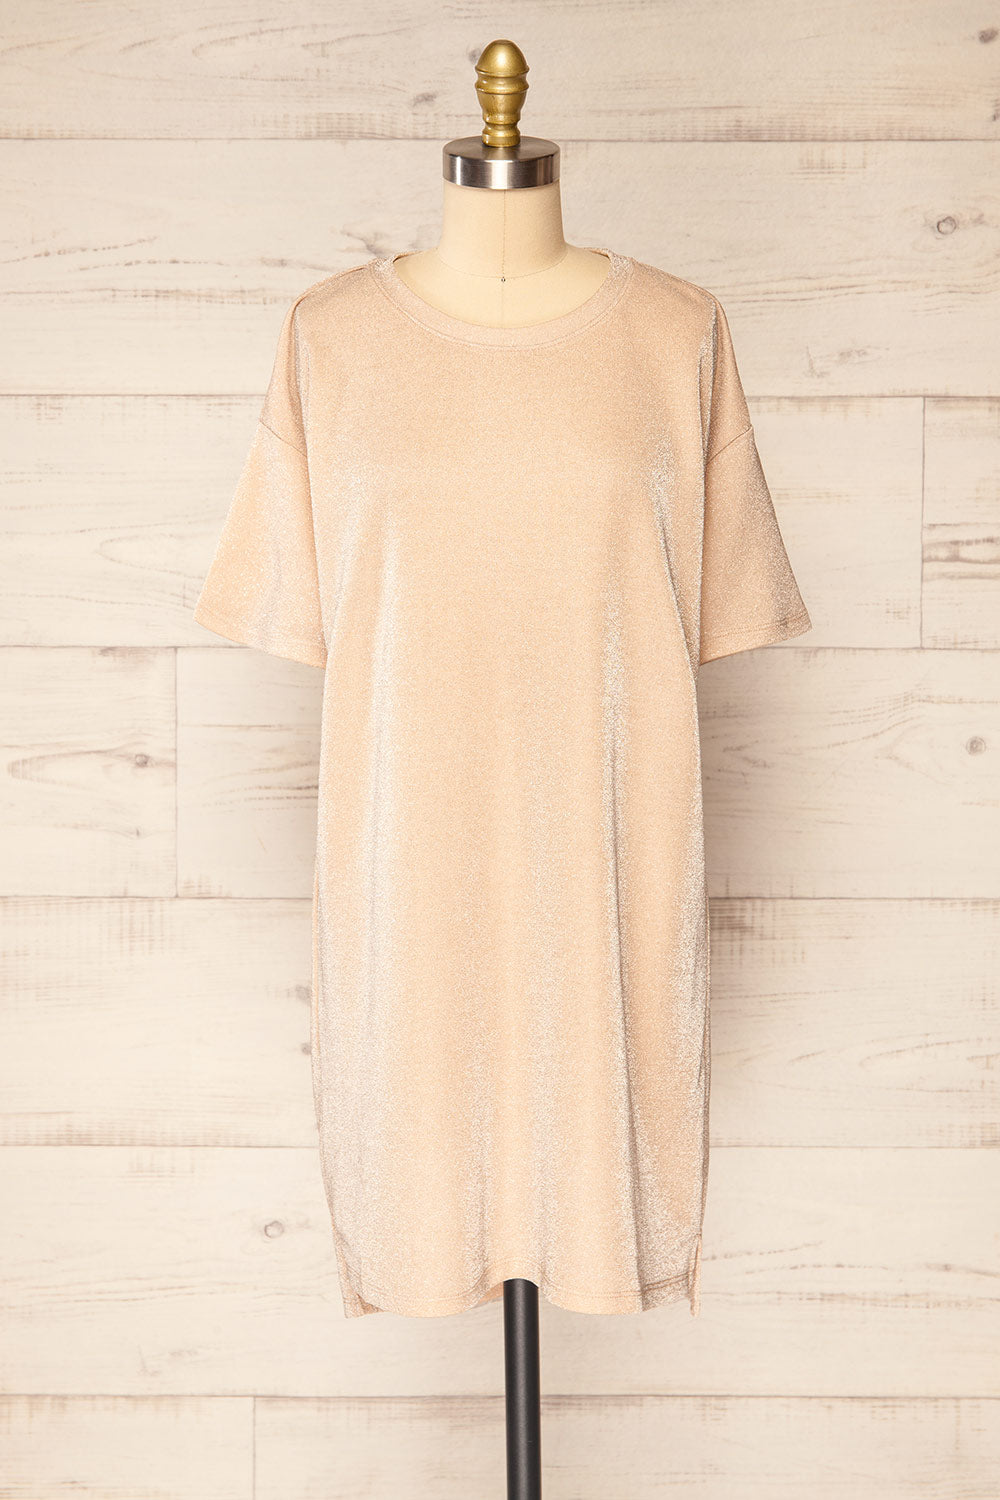 Dattilo Blush Shimmery T-Shirt Dress | La petite garçonne front view